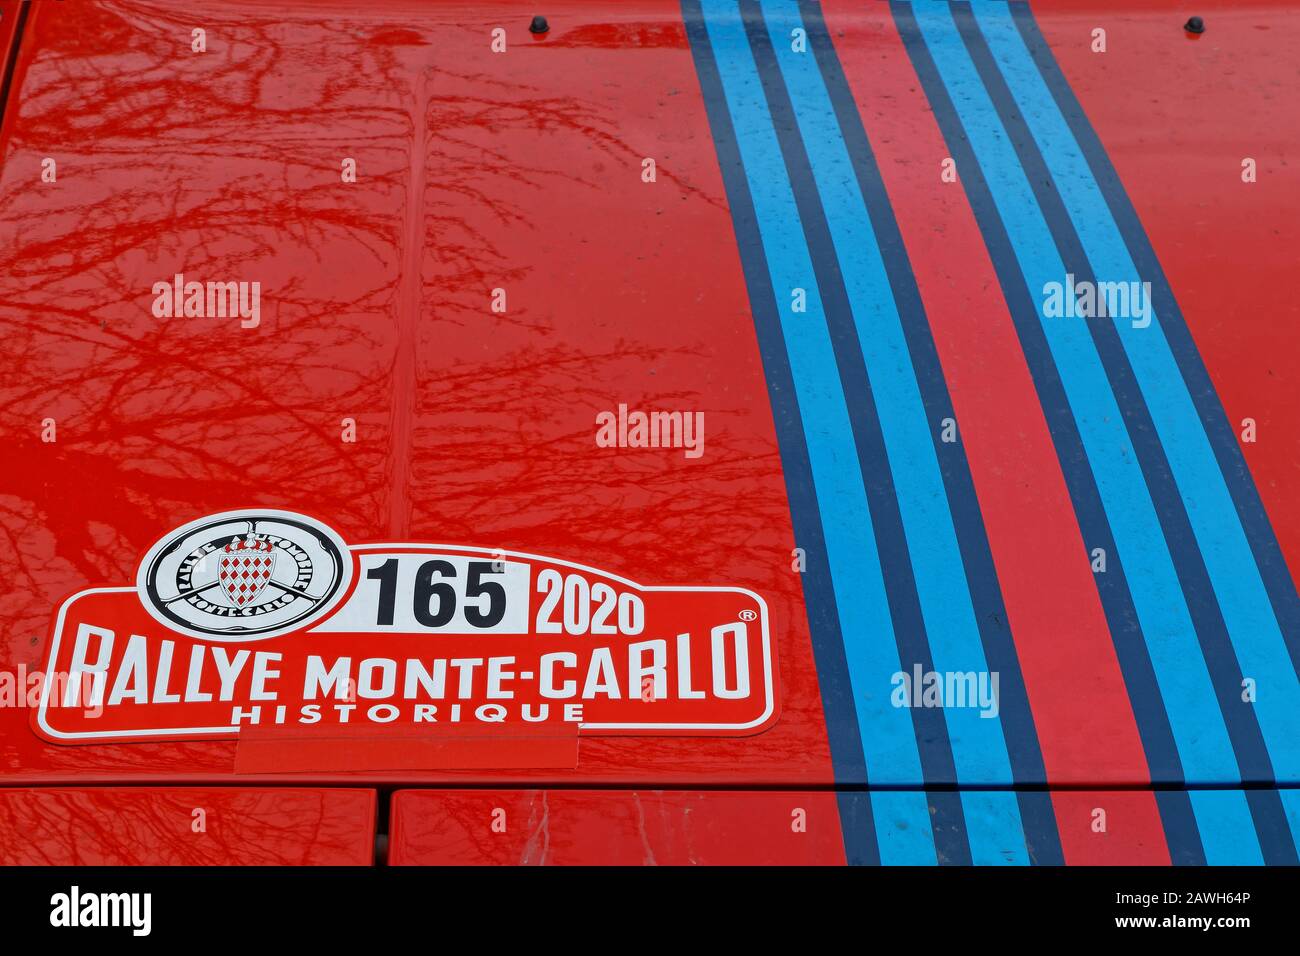 Saint-AGREVE, FRANCE, 2 février 2020 : affiches historiques du rallye de Monte-Carlo sur une voiture. La 23ème édition accueille 310 équipes de 28 pays avec 40 soutien-gorge Banque D'Images